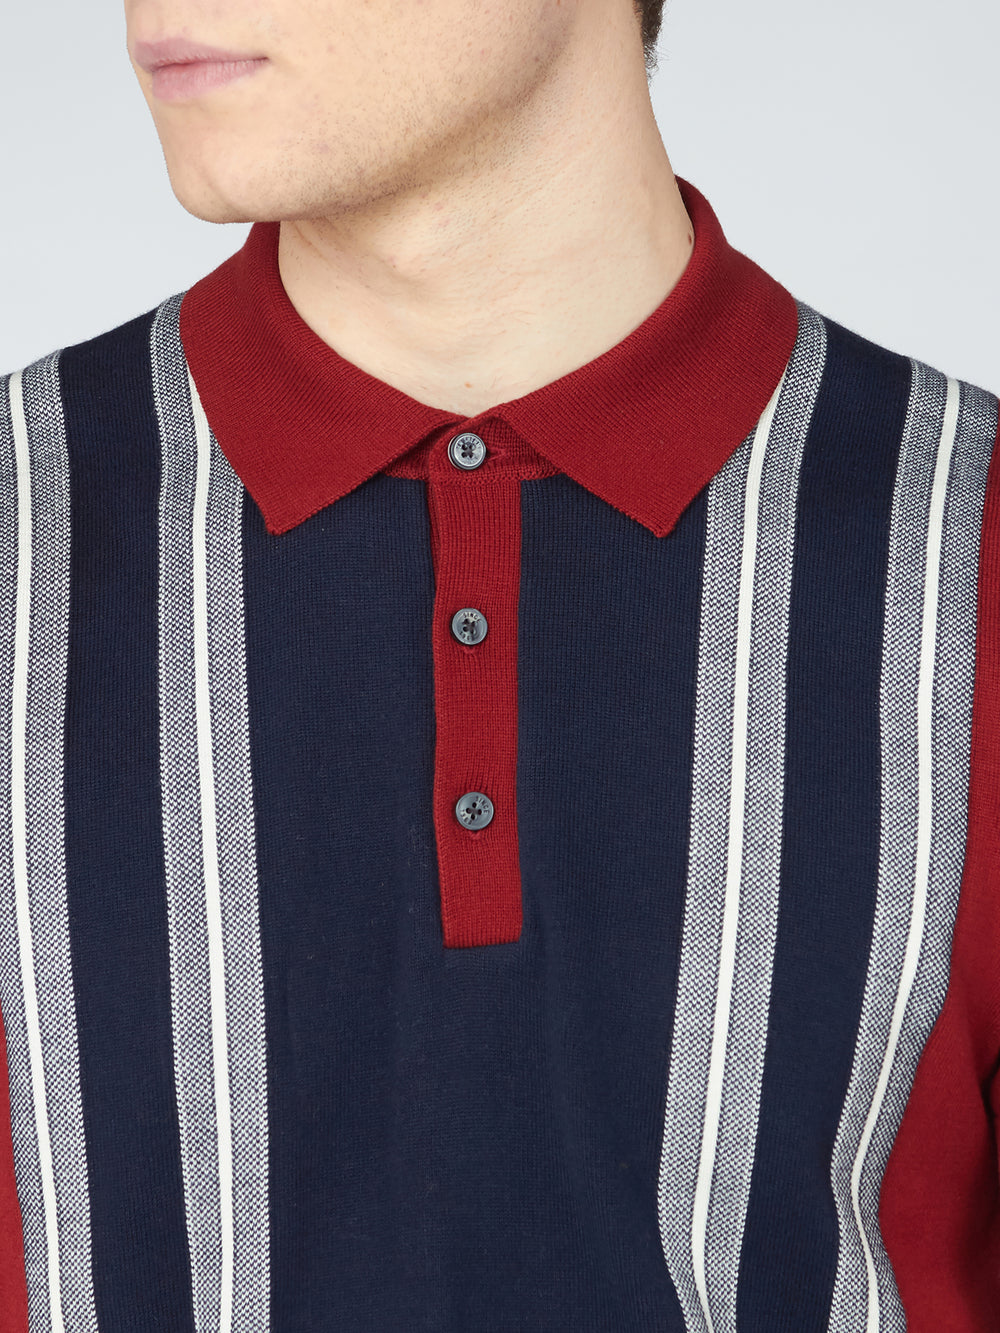 Ben Sherman, Mod Knit Polo, Men's Sweater Polo, Retro Stripe Shirt, Red, front collar detail